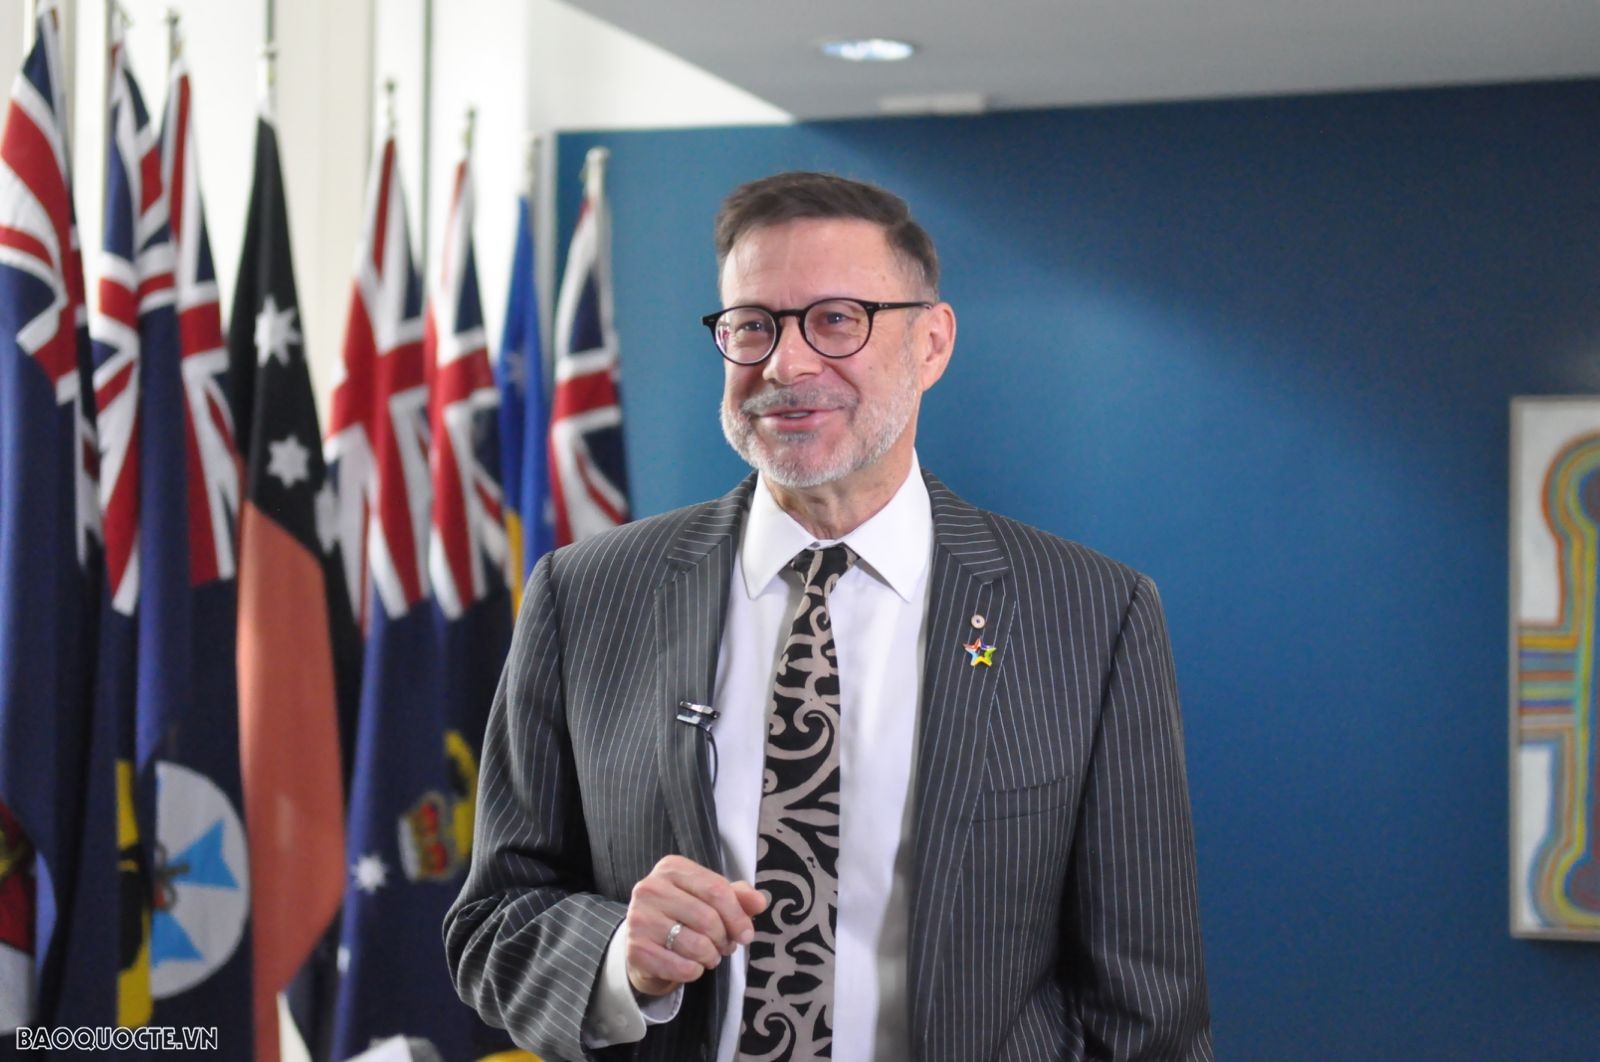 Đại sứ Andrew Goledzinowski: Chuyến thăm Việt Nam của Thủ tướng Australia là cơ hội quan trọng đối với cả hai nước